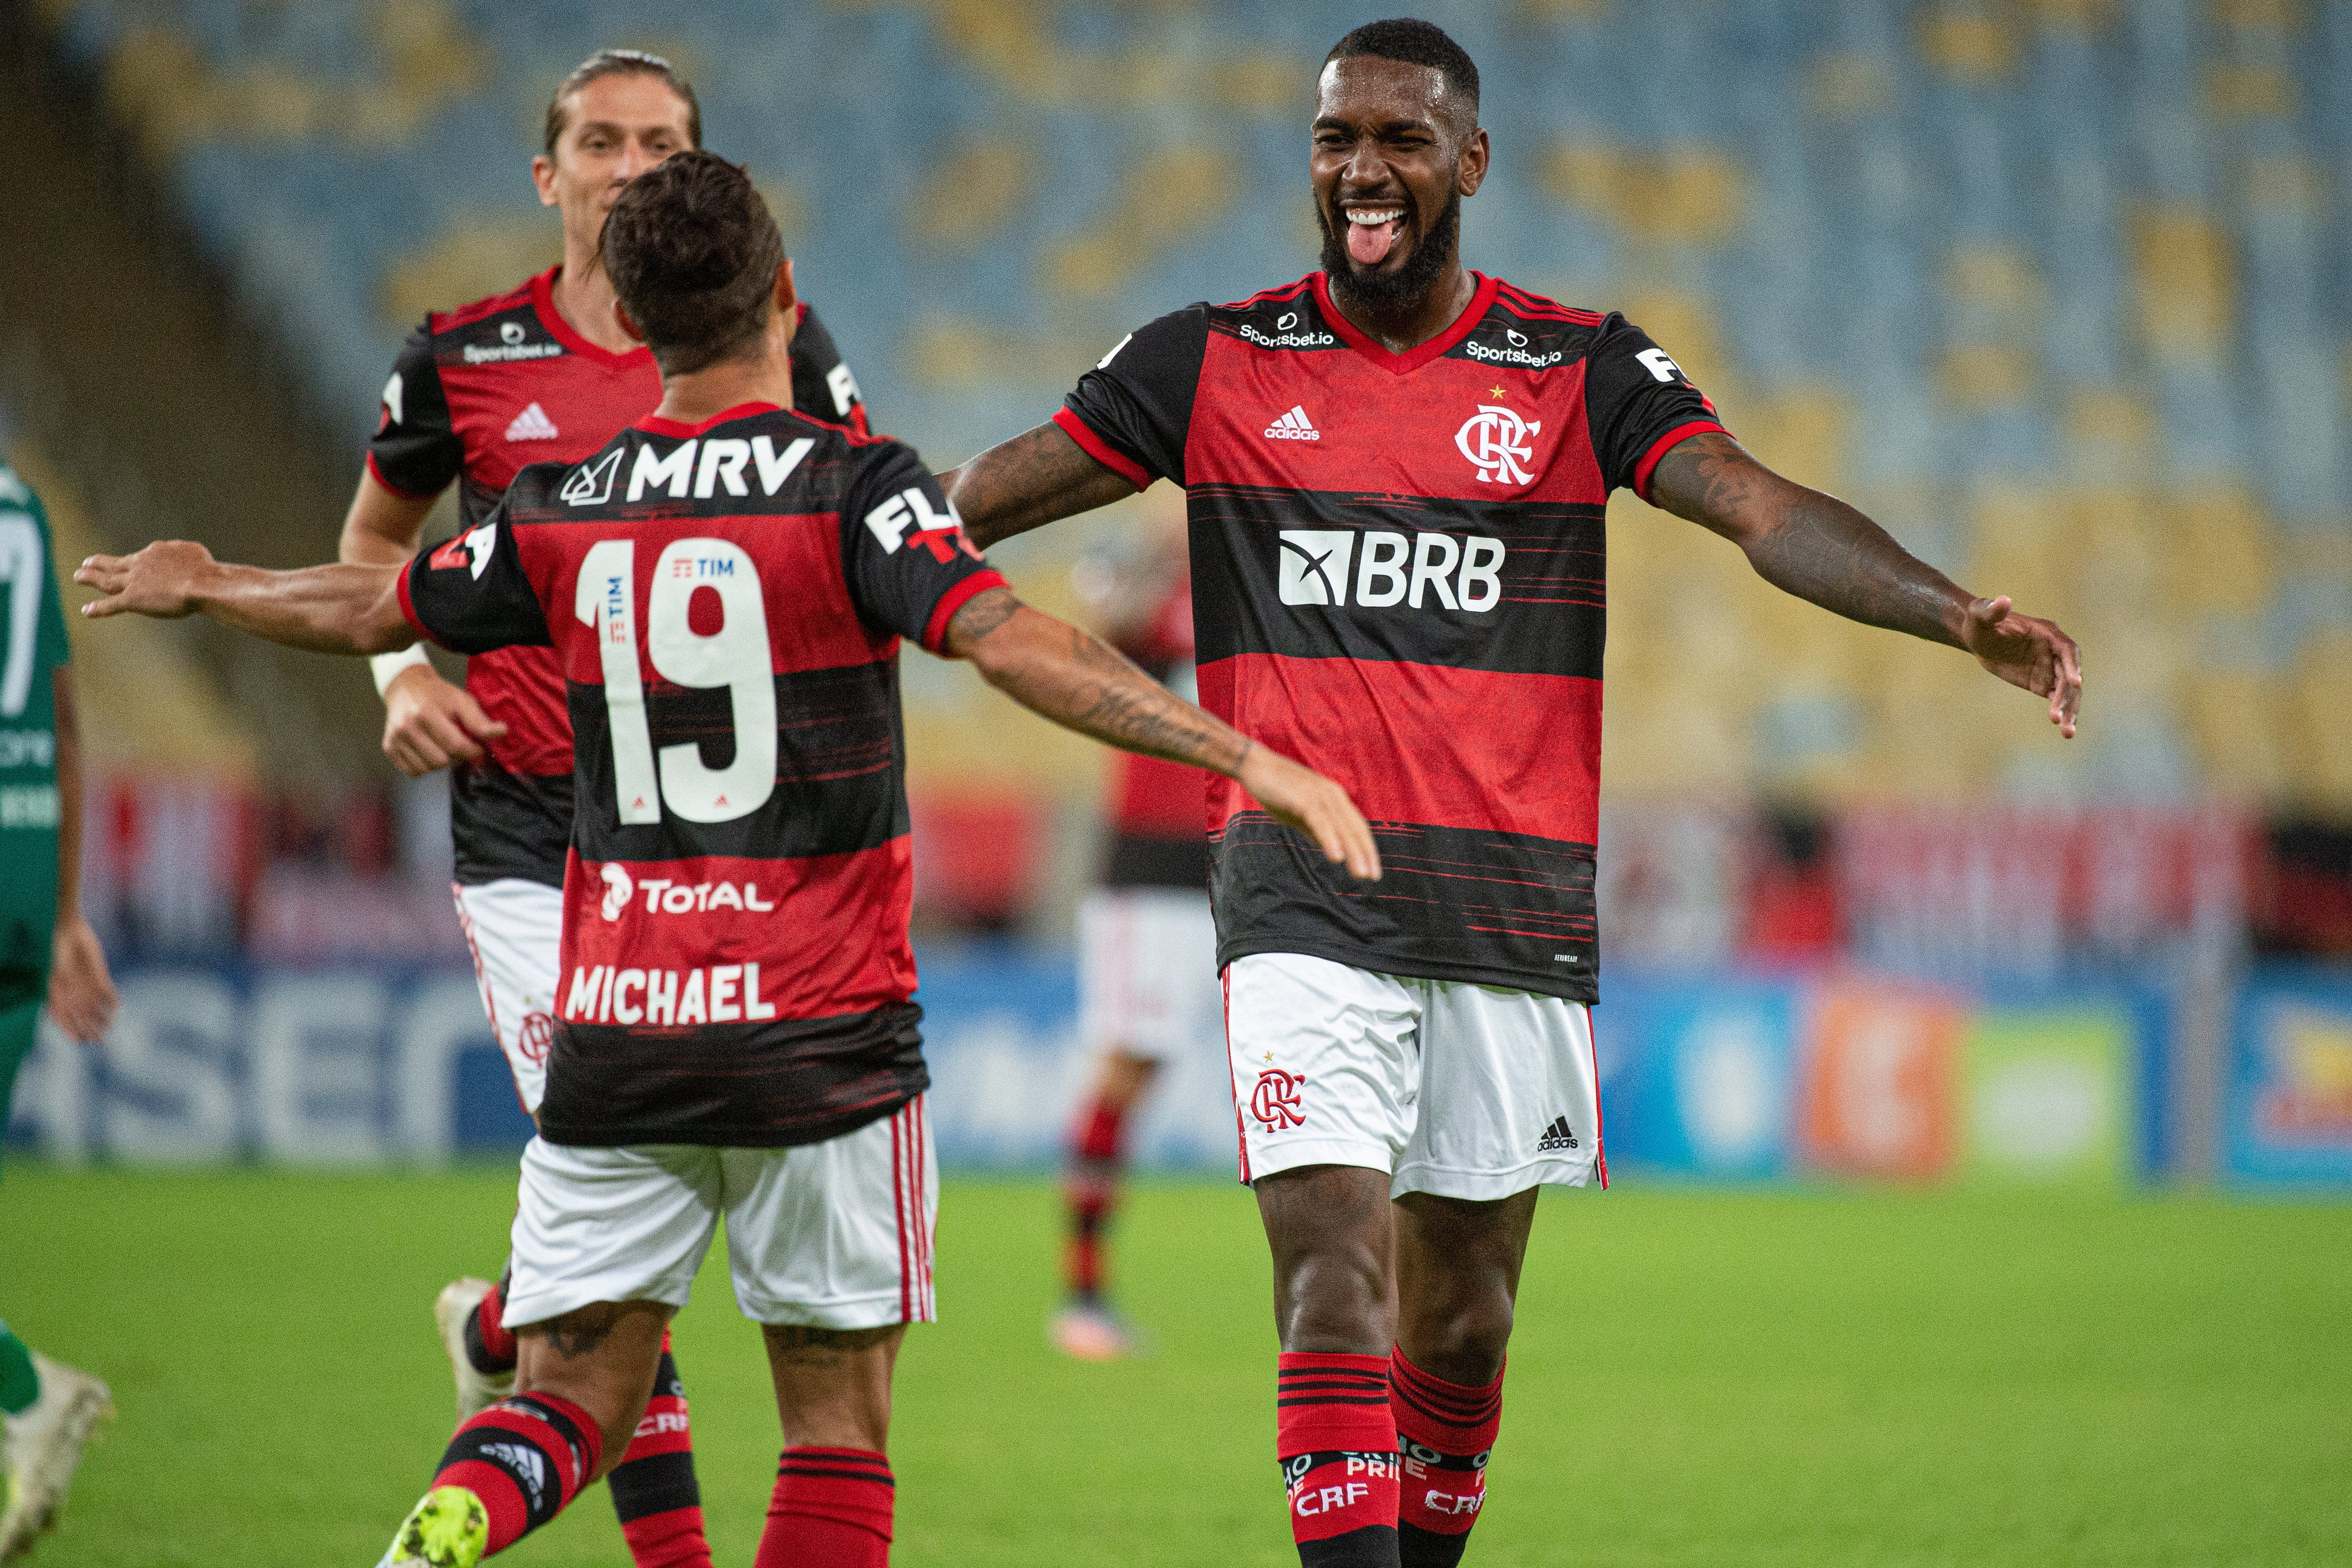 Mycujoo Como Assistir A Flamengo X Volta Redonda Pela Semifinal Da Taca Rio Veja